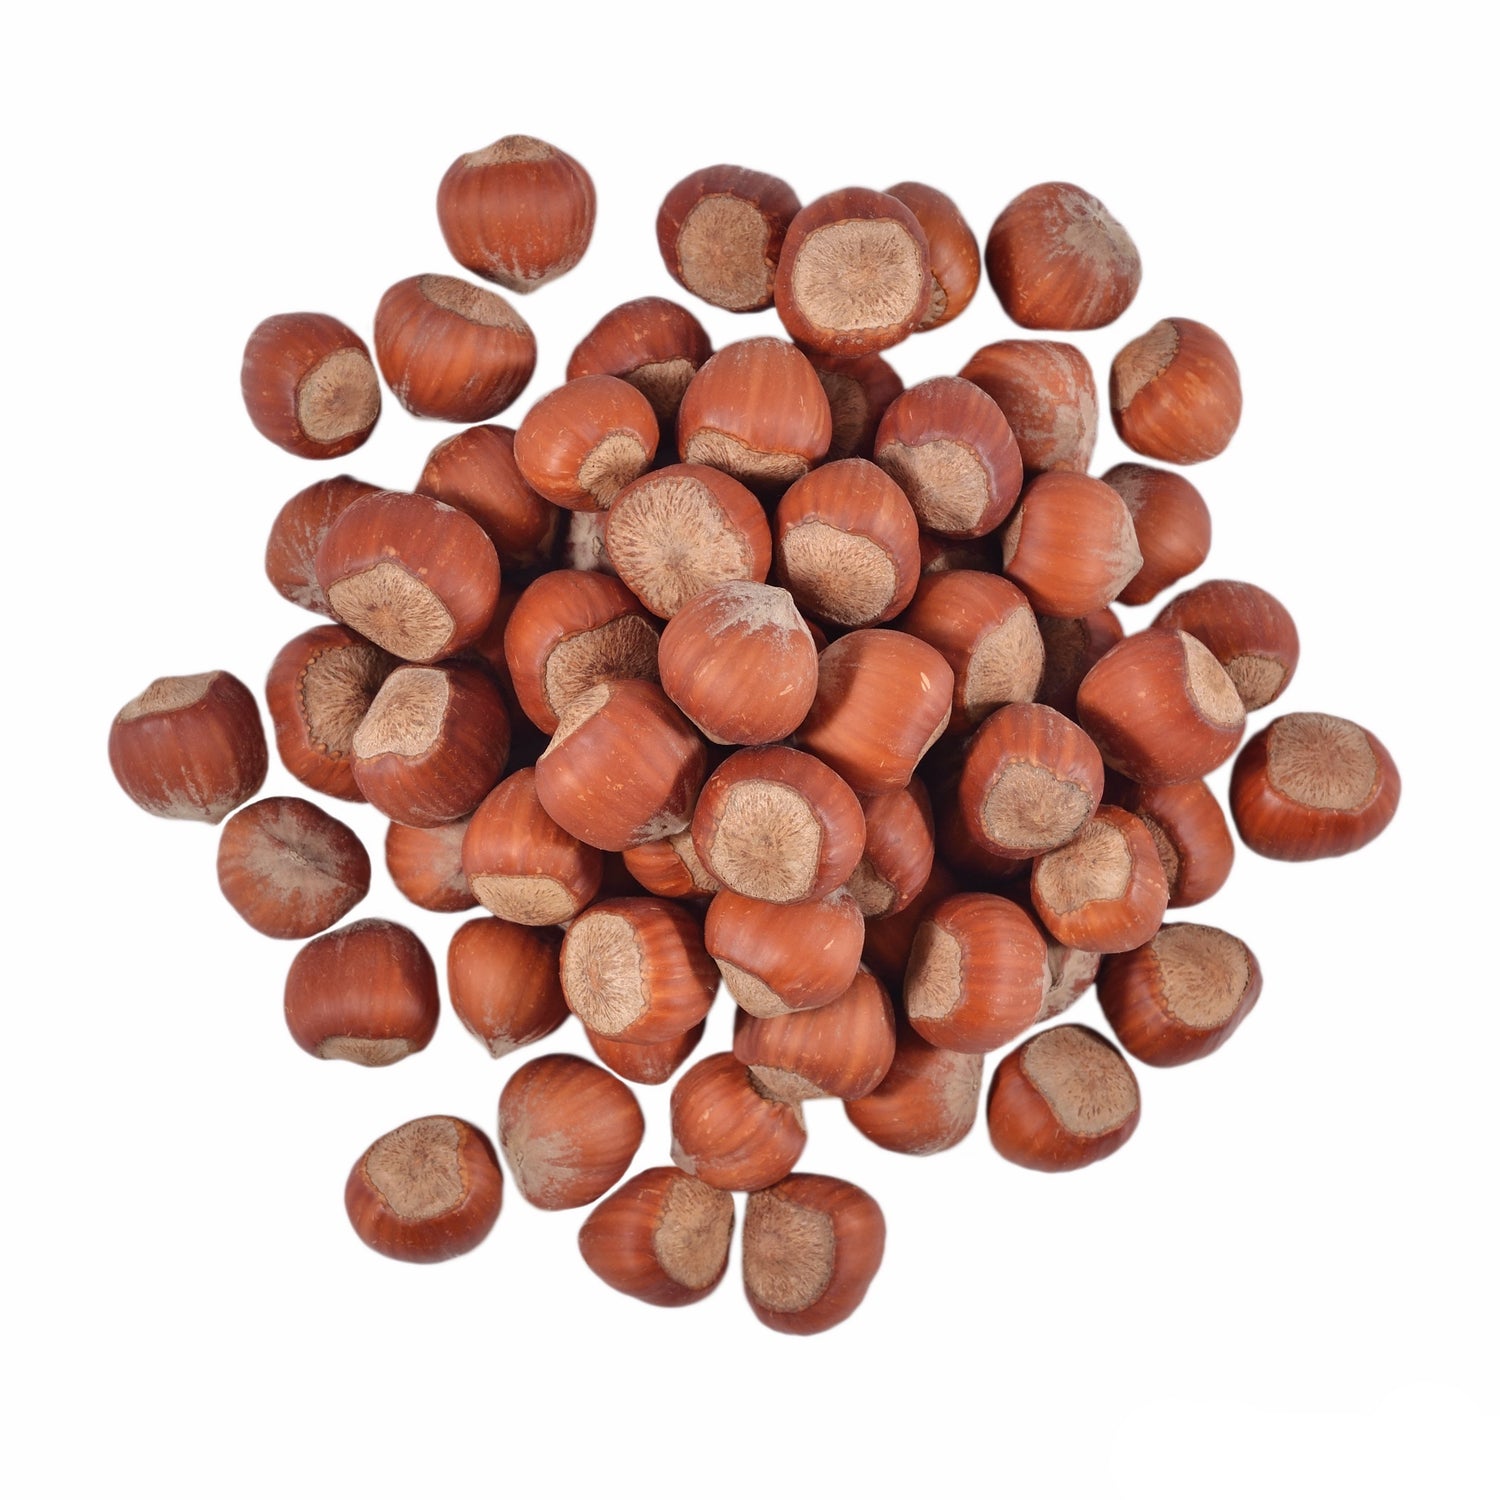 Australian hazelnuts in shell